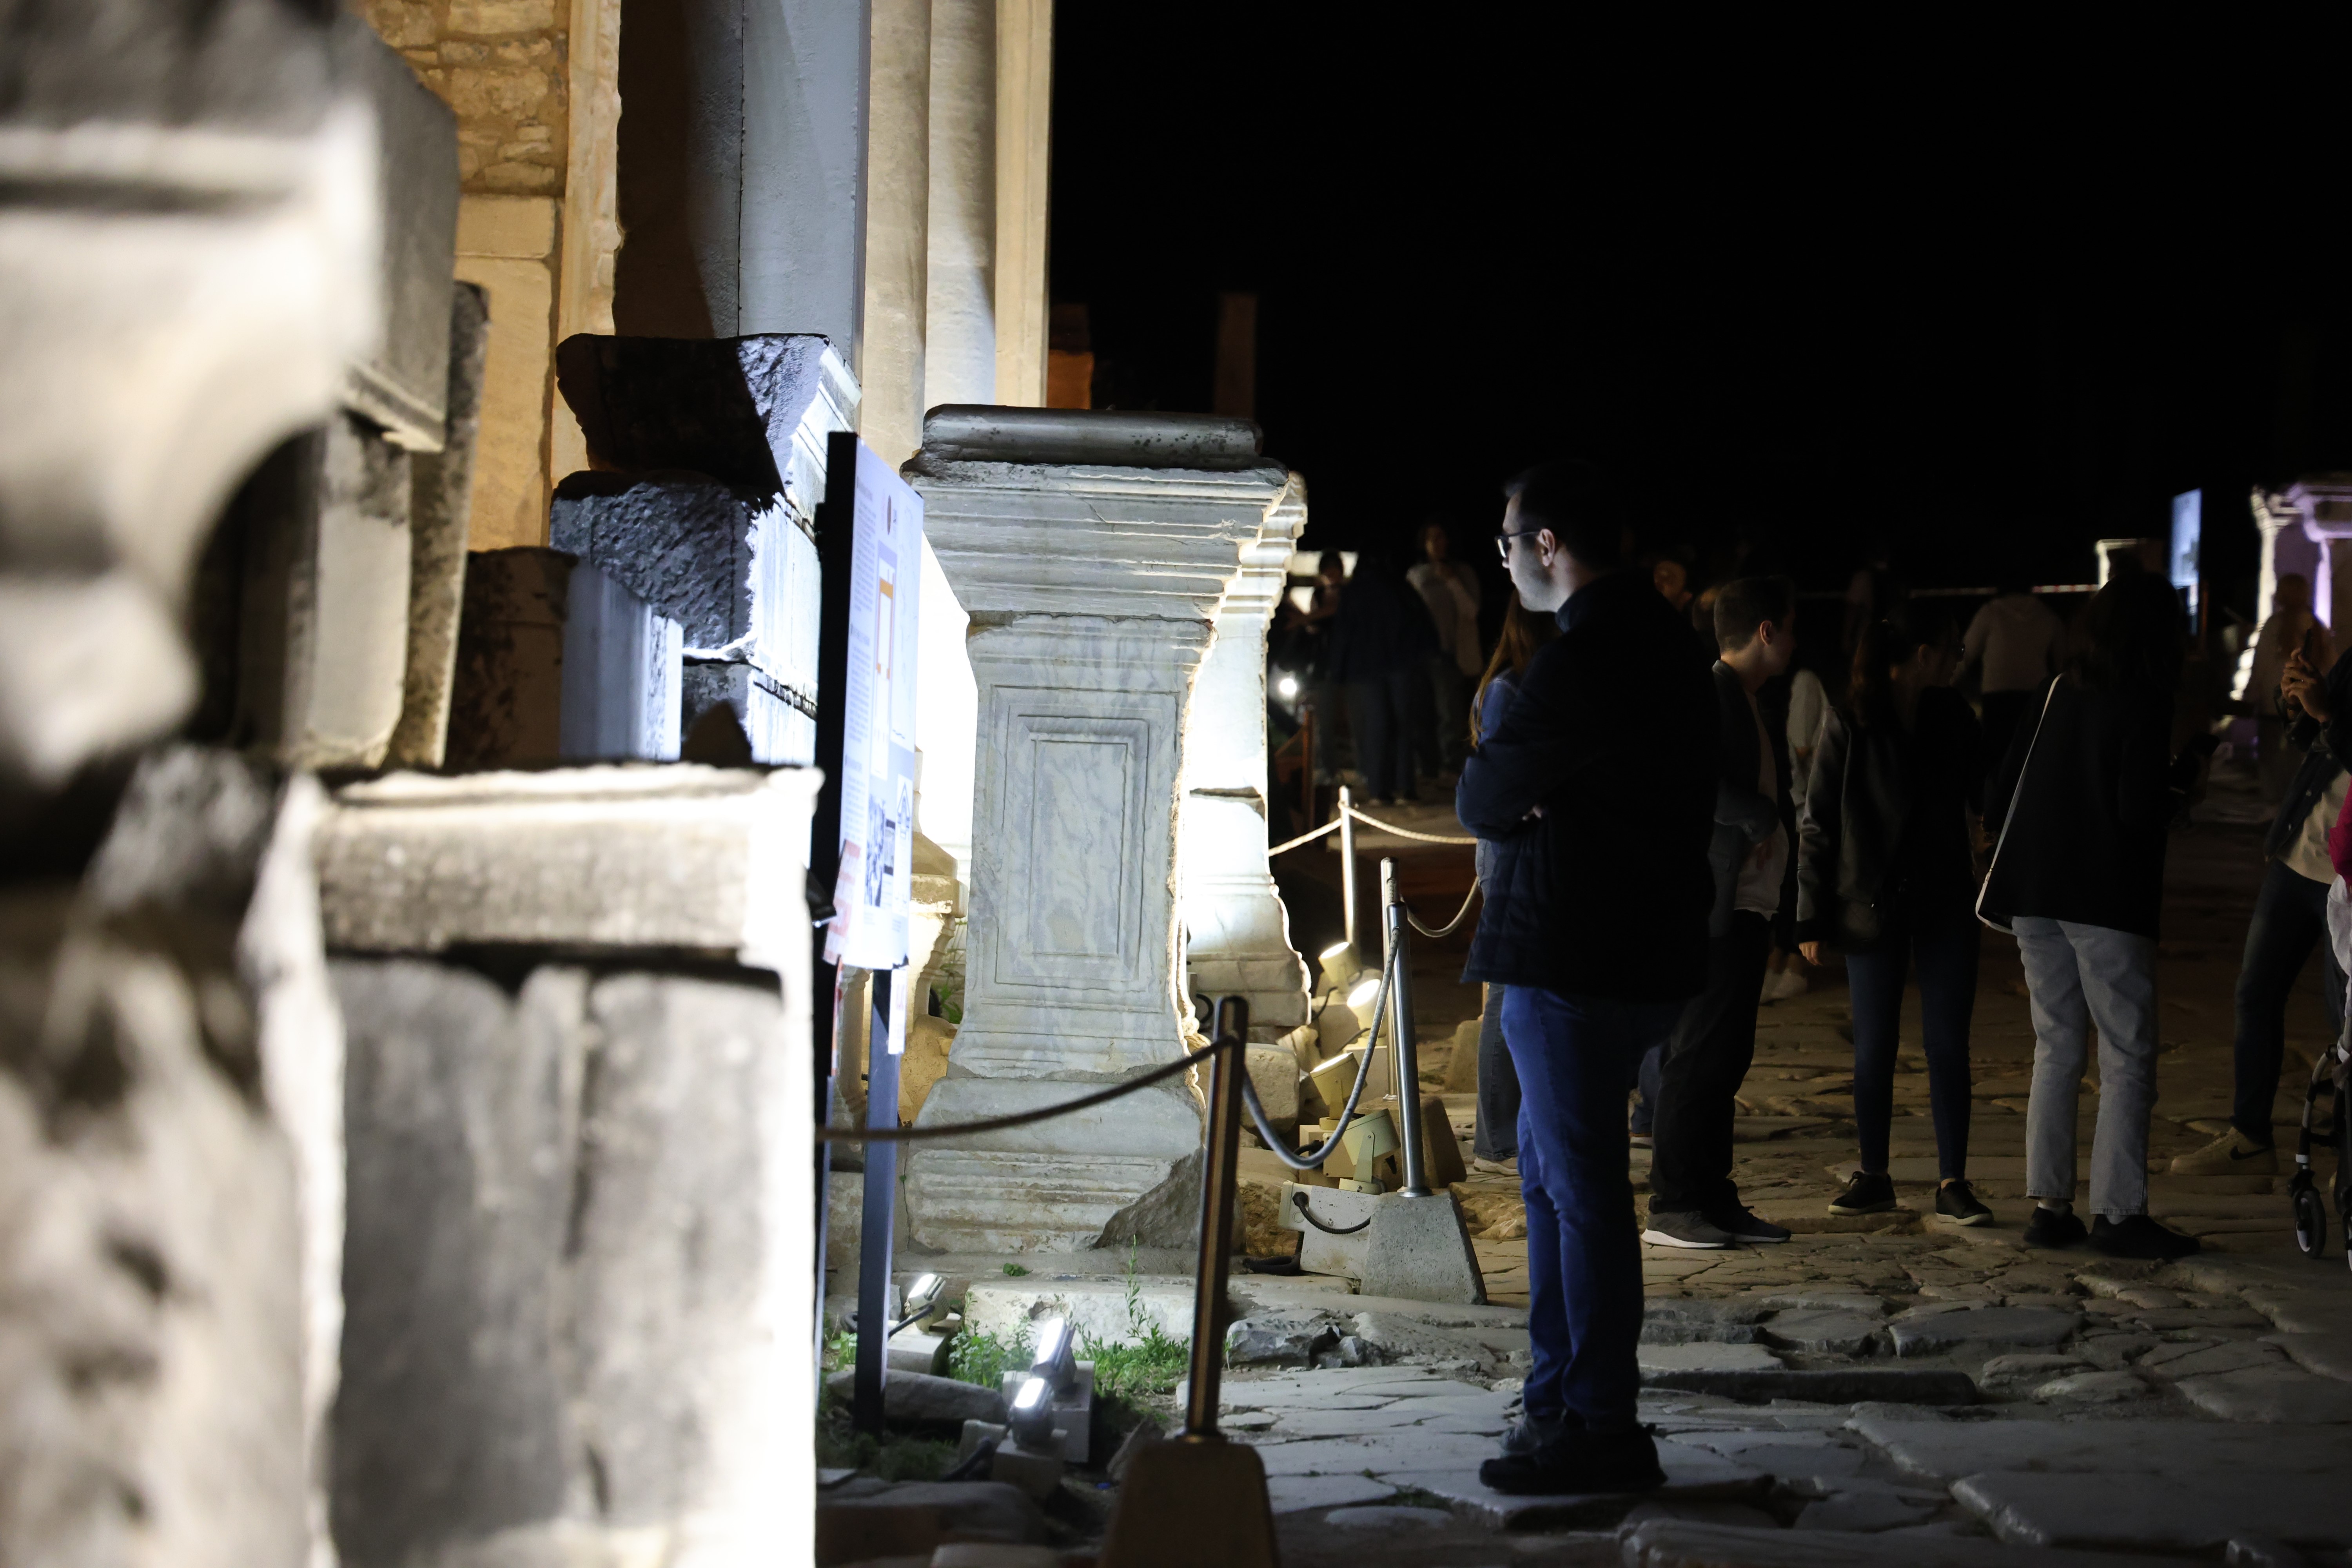 Efes Antik Kenti’ndeki ‘gece müzeciliği’ lansmanına yoğun katılım